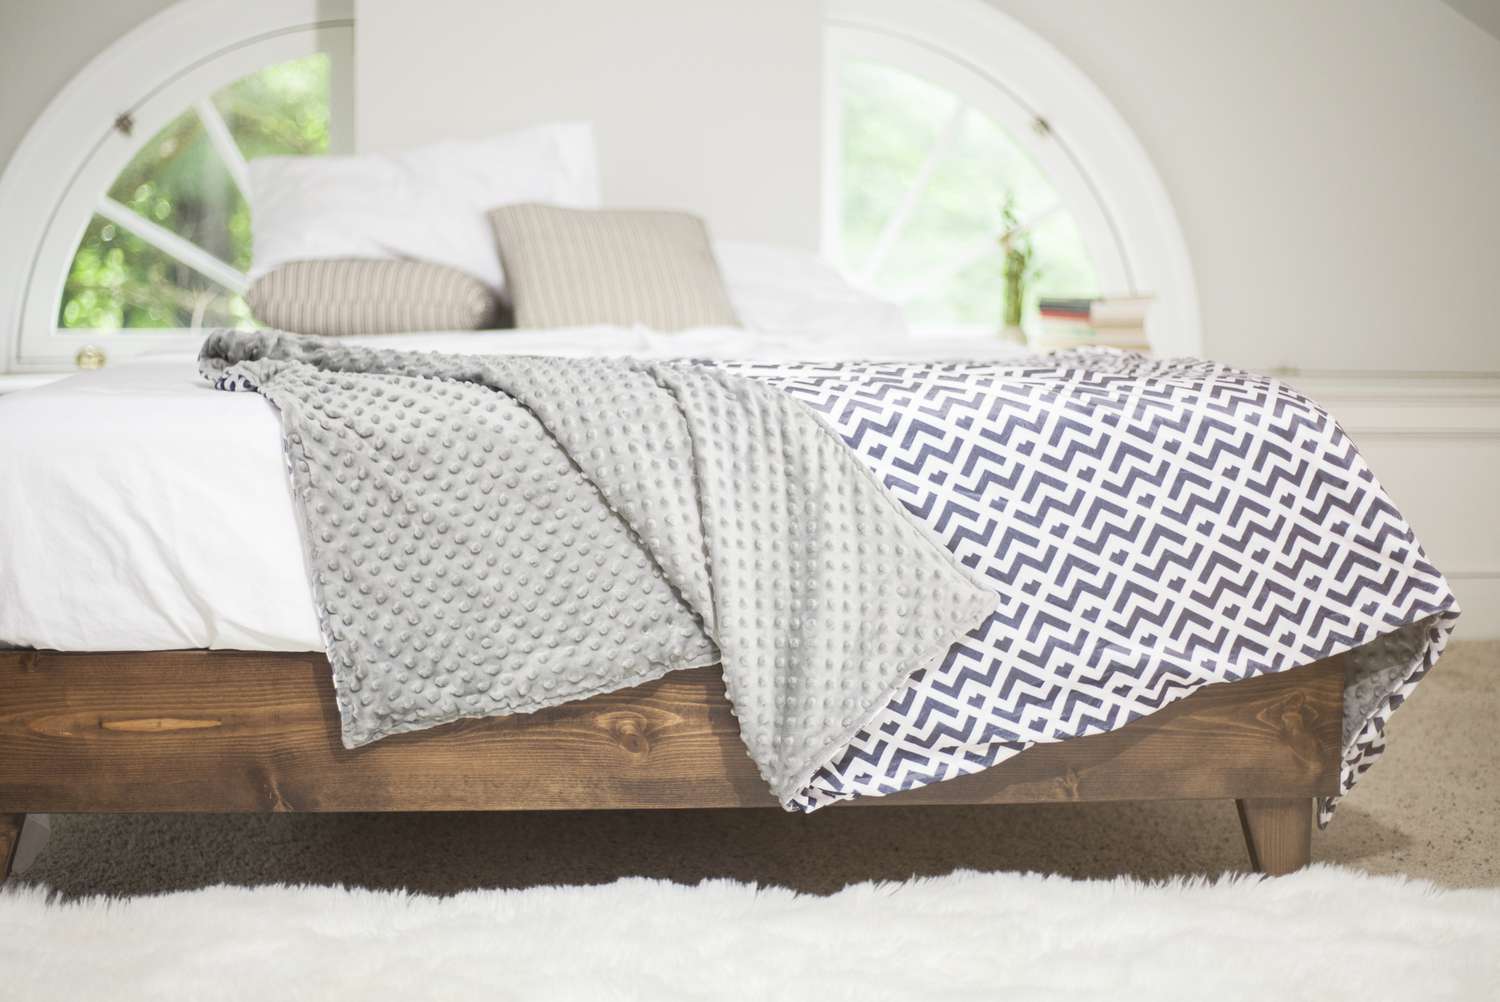 Couverture lestée réversible sur un lit à cadre en bois avec des draps blancs dessus